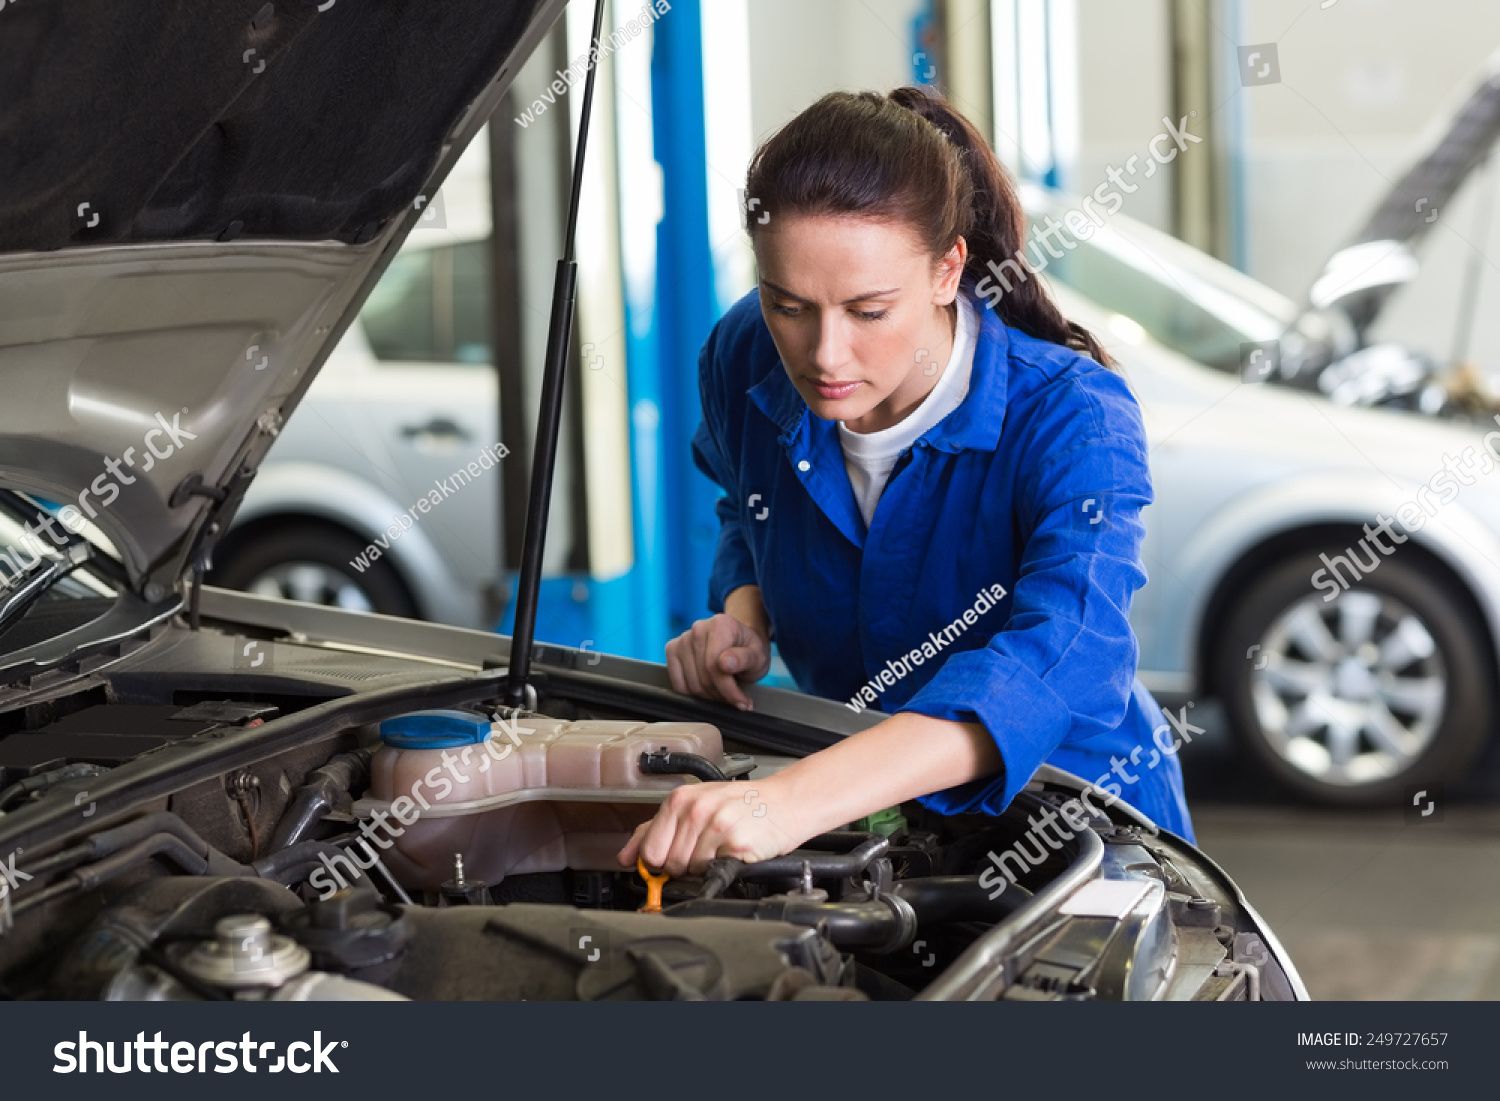 stock-photo-mechanic-working-under-the-hood-at-the-repair-garage-249727657.jpg